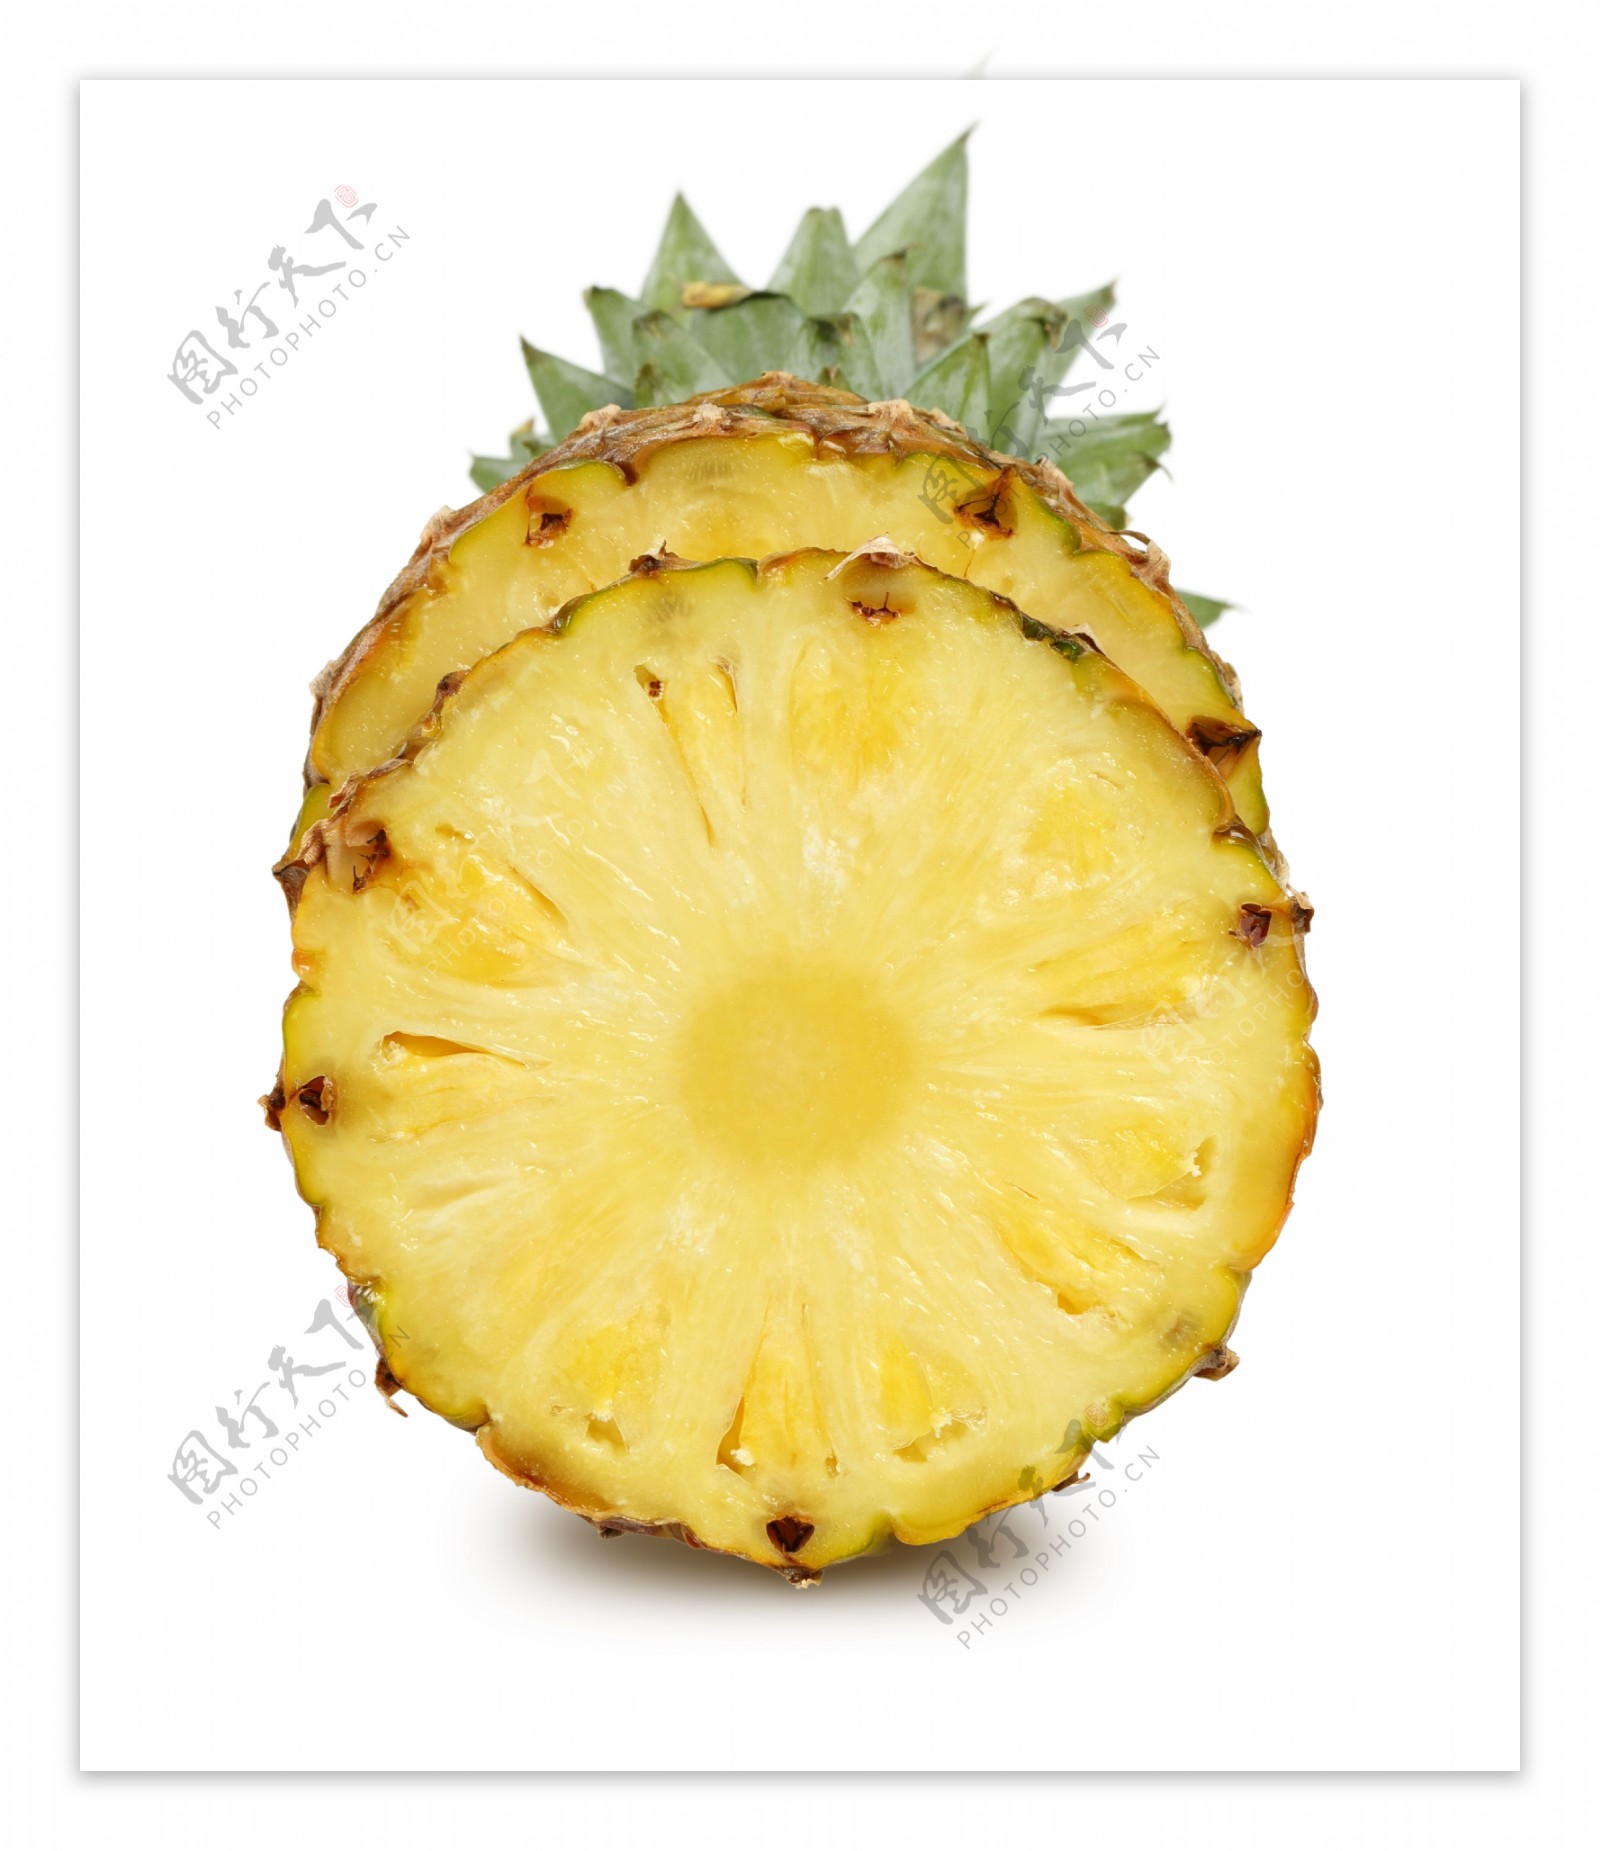 新鲜的菠萝水果高清图片